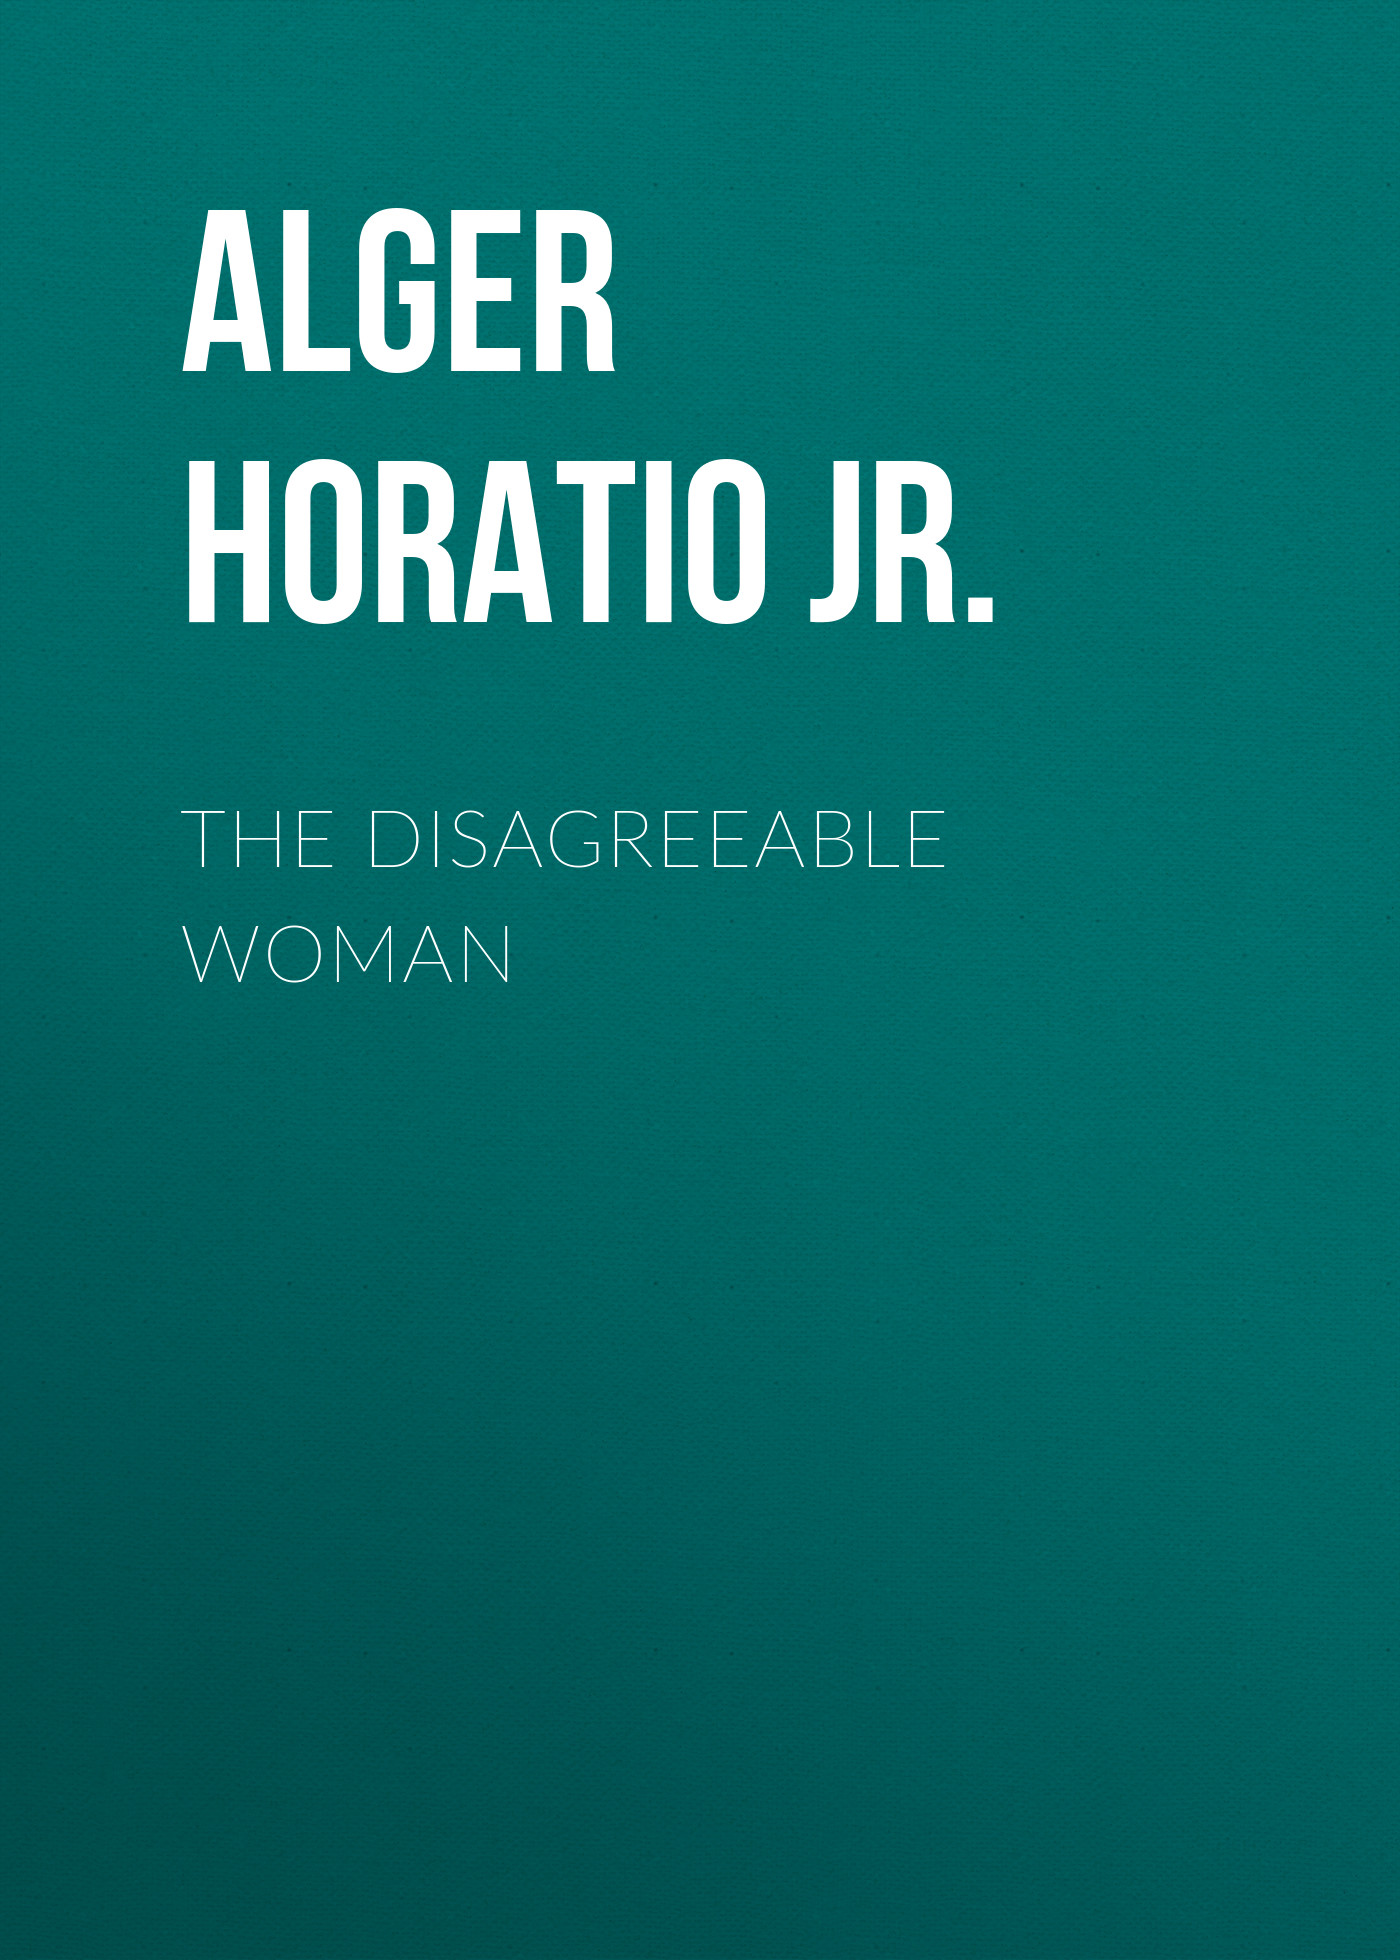 Книга The Disagreeable Woman из серии , созданная Horatio Alger, может относится к жанру Социальная фантастика, Литература 19 века. Стоимость электронной книги The Disagreeable Woman с идентификатором 34843174 составляет 0 руб.